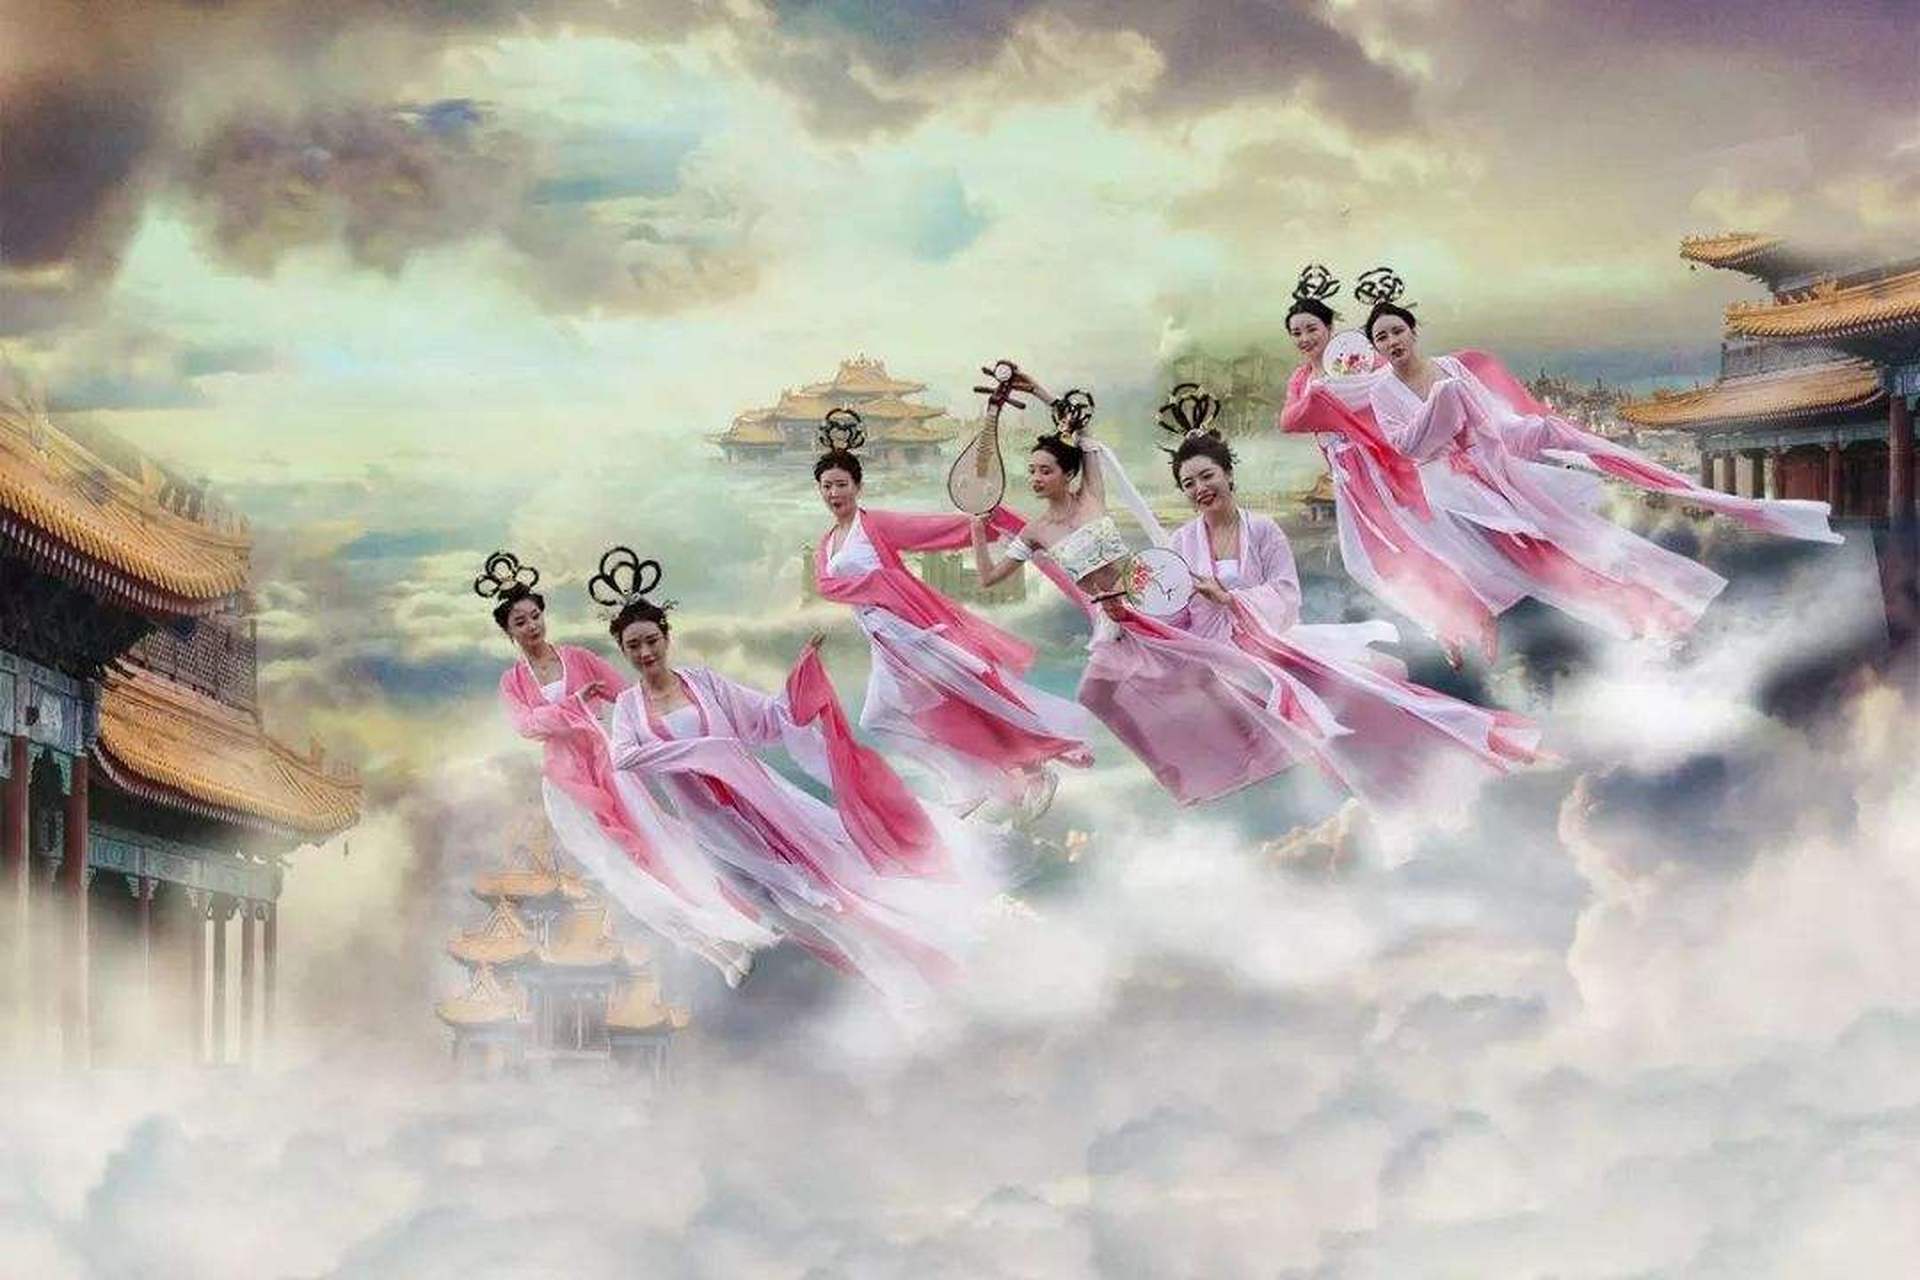 民俗文化 / 七仙女是传说中玉皇大帝的七个女儿,由此衍生出众多美丽的